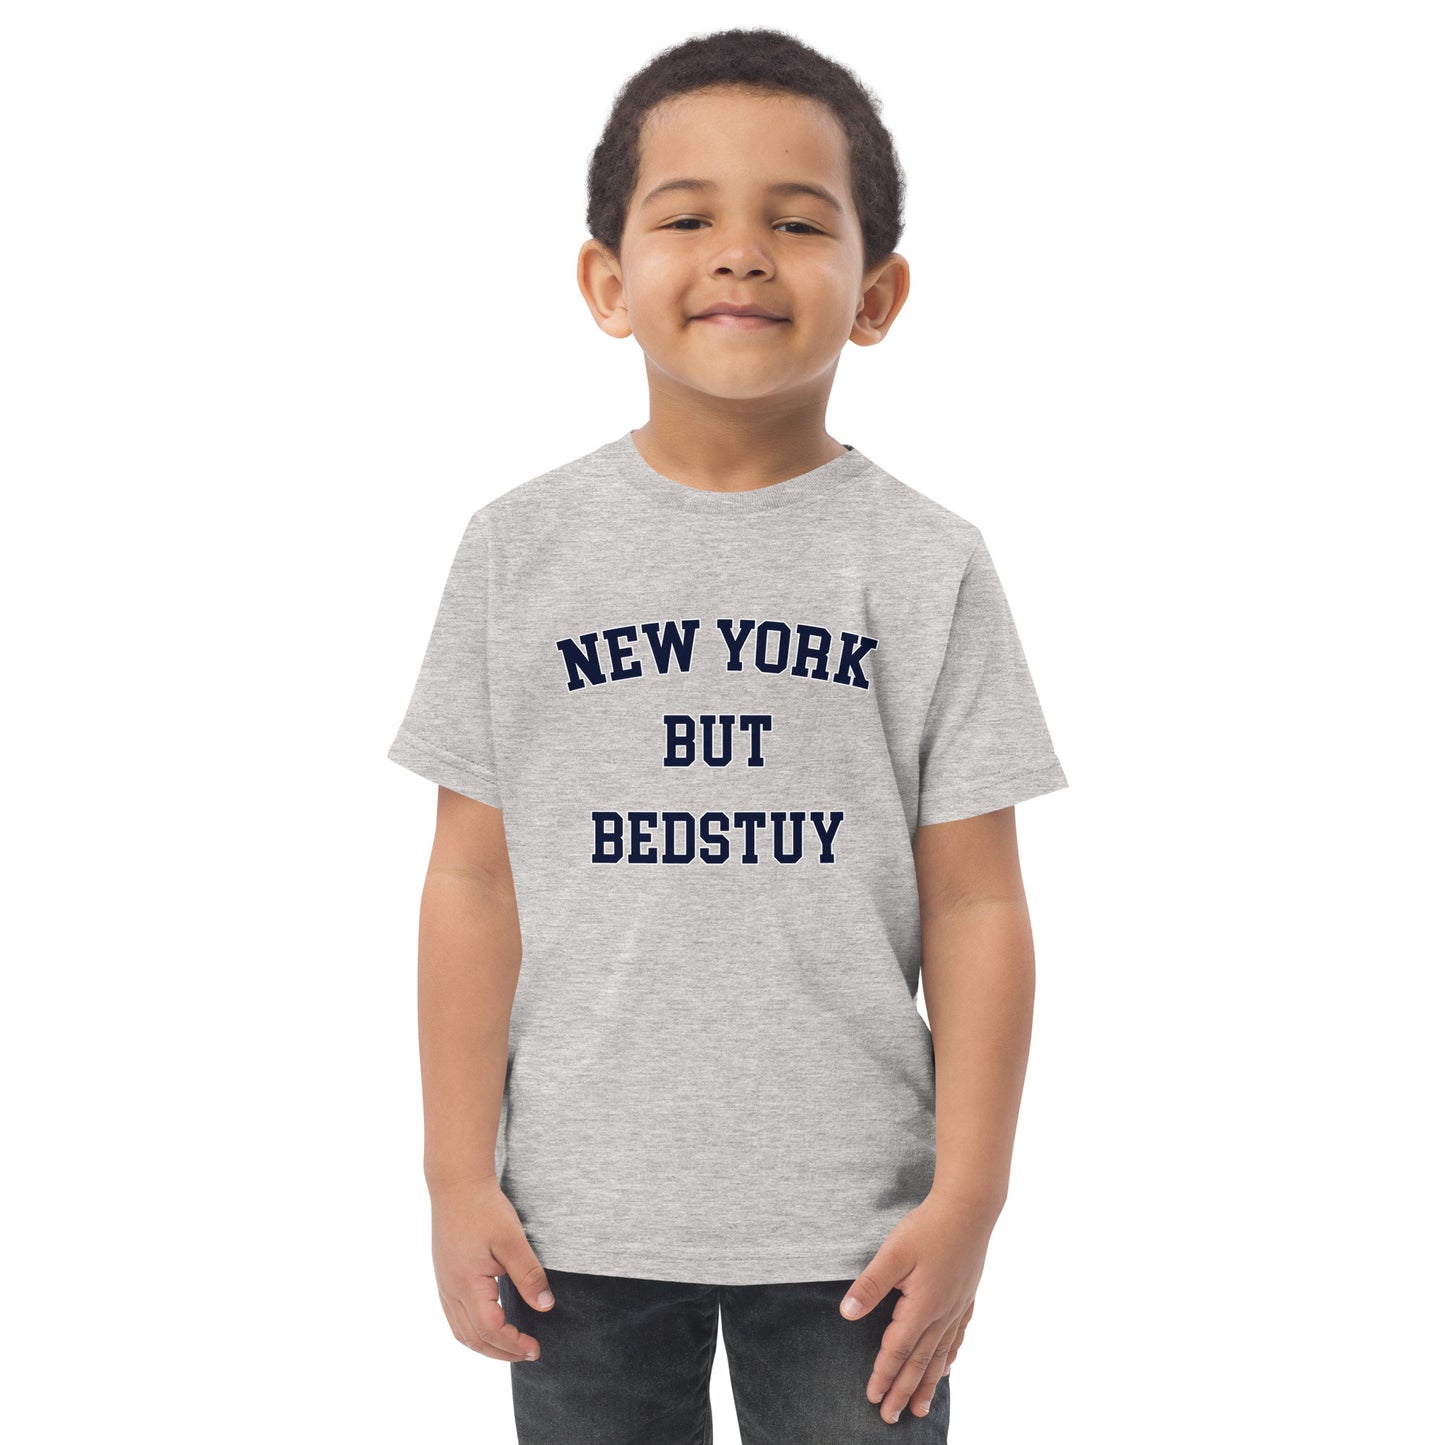 New York But Bedstuy Toddler Jersey T-Shirt